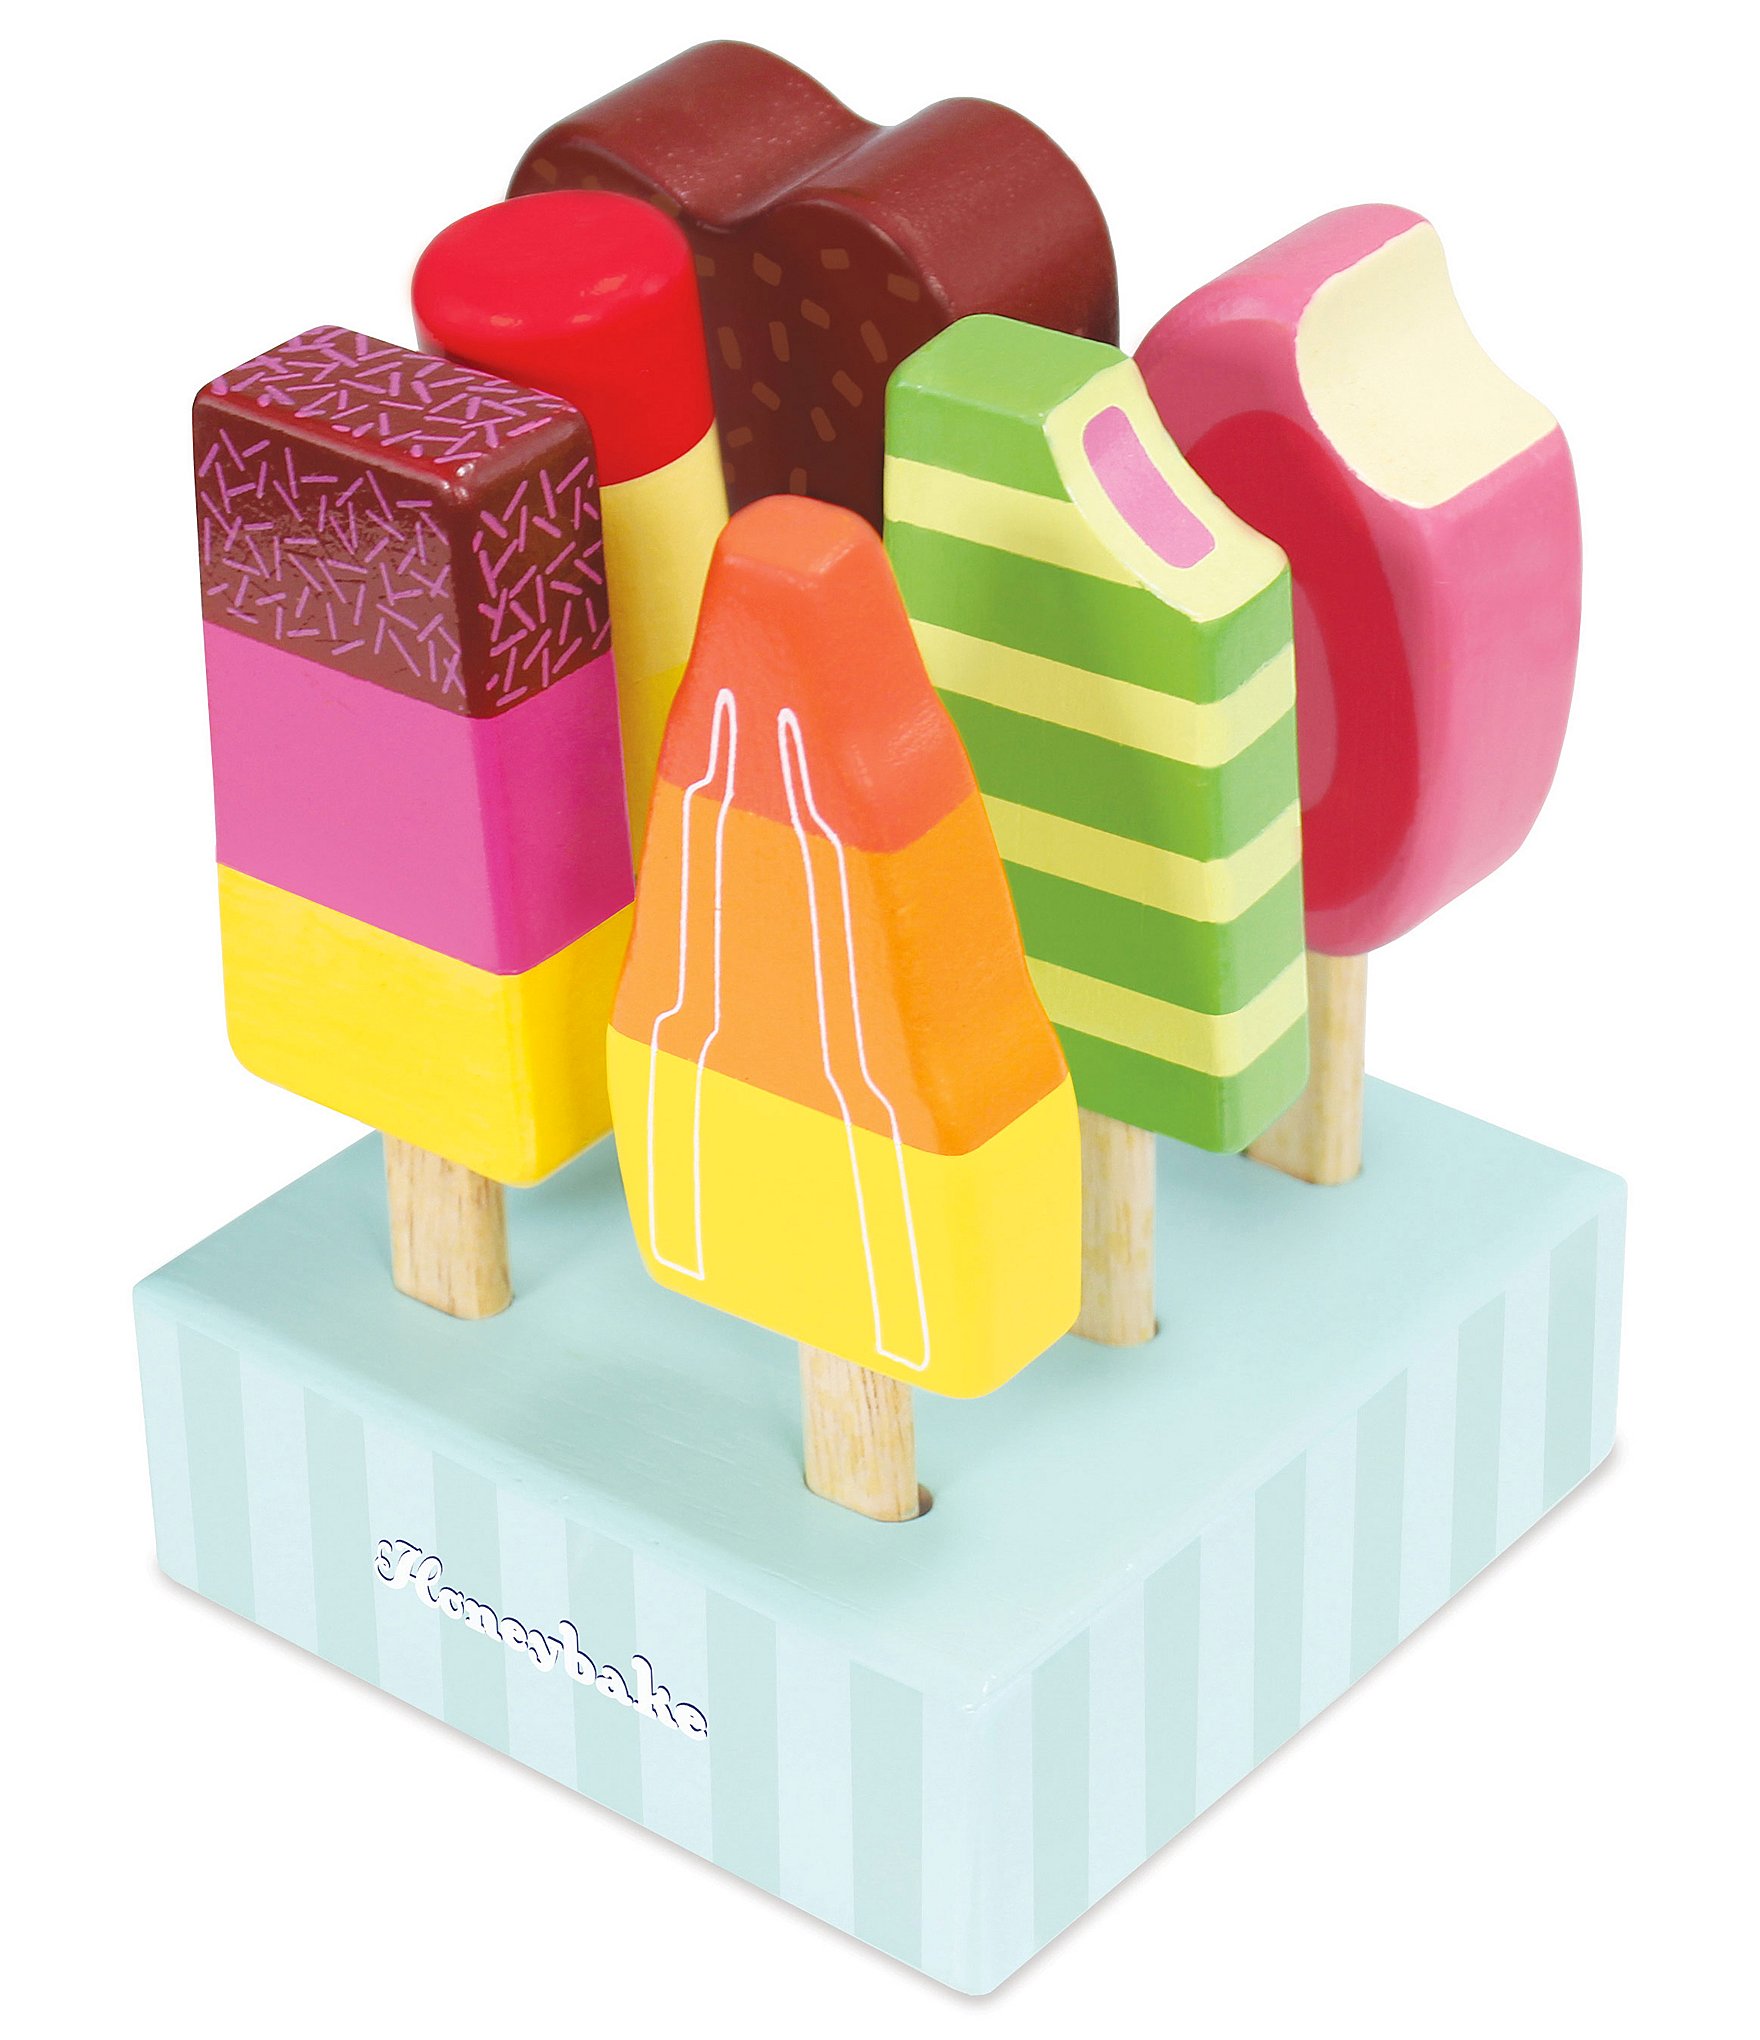 Le Toy Van Honeybake Ice Cream Set 